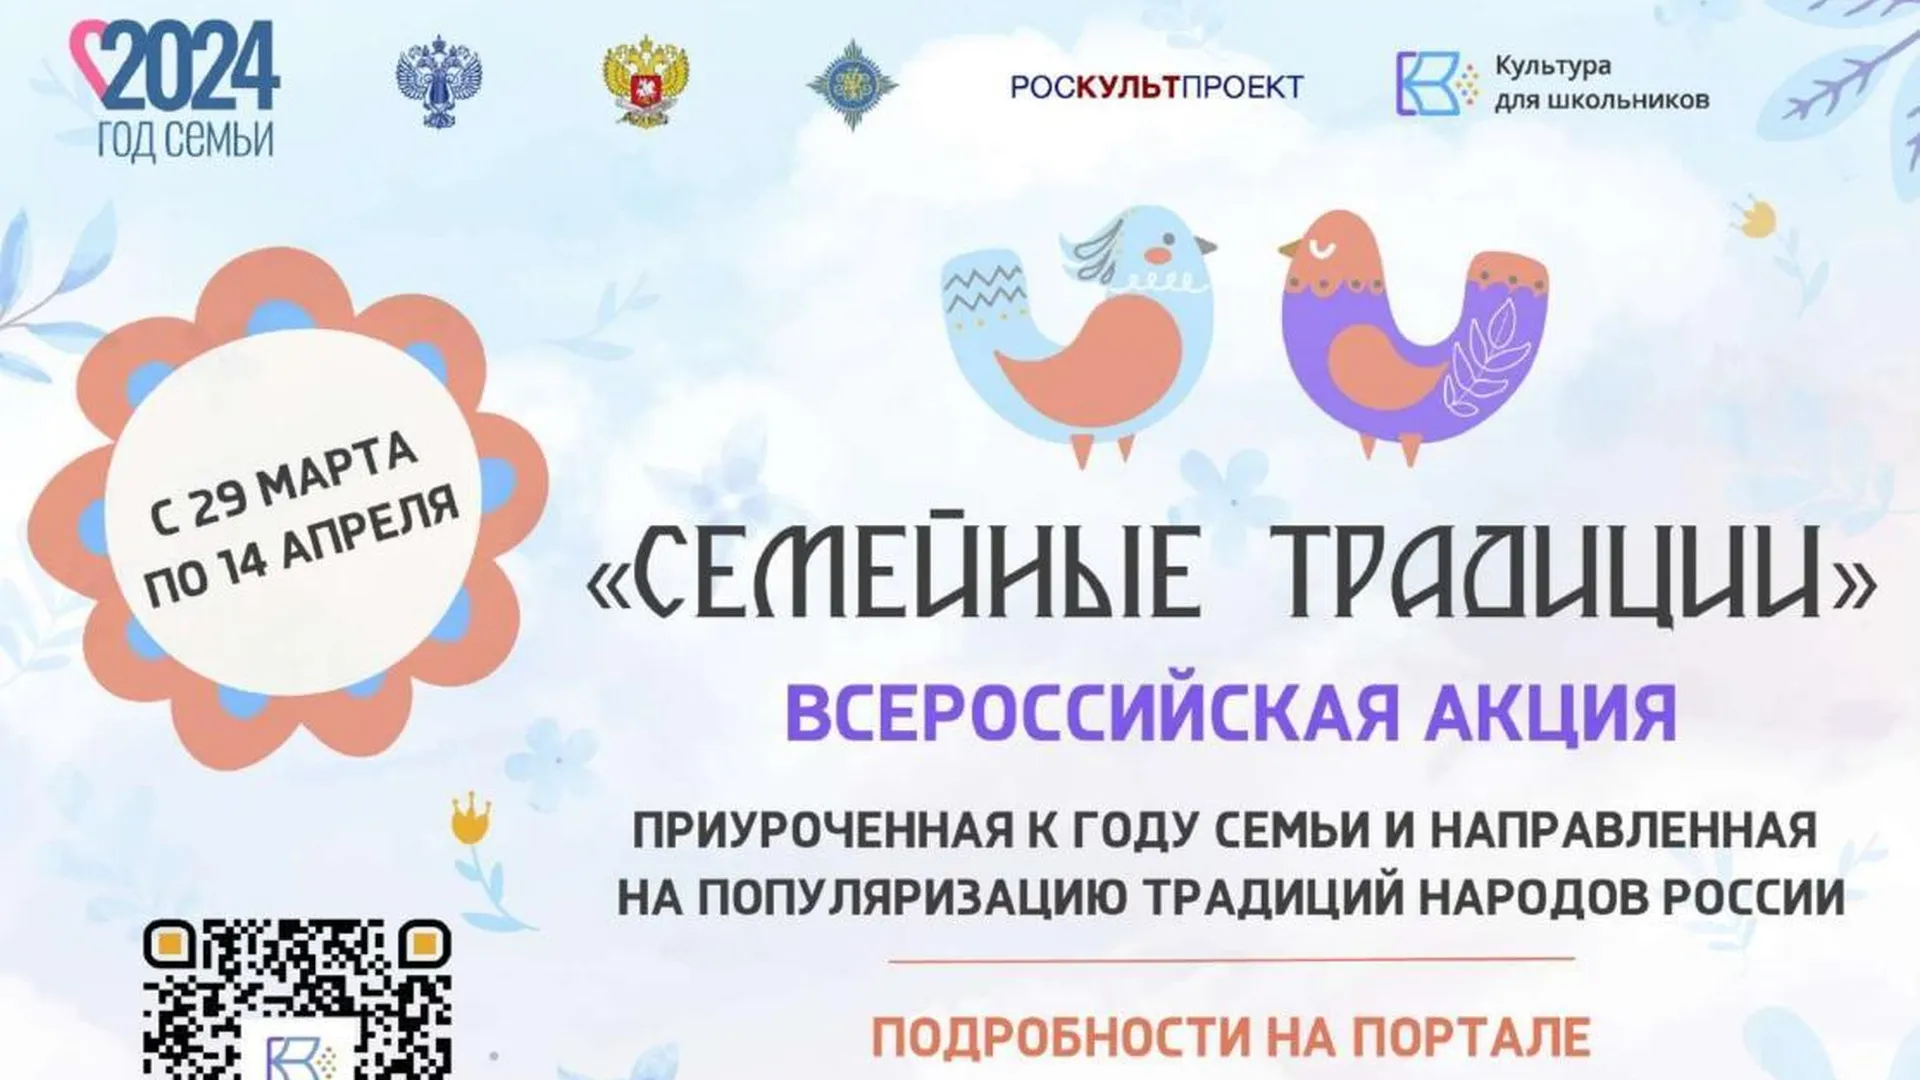 Всероссийская акция «Семейные традиции» стартует 29 марта